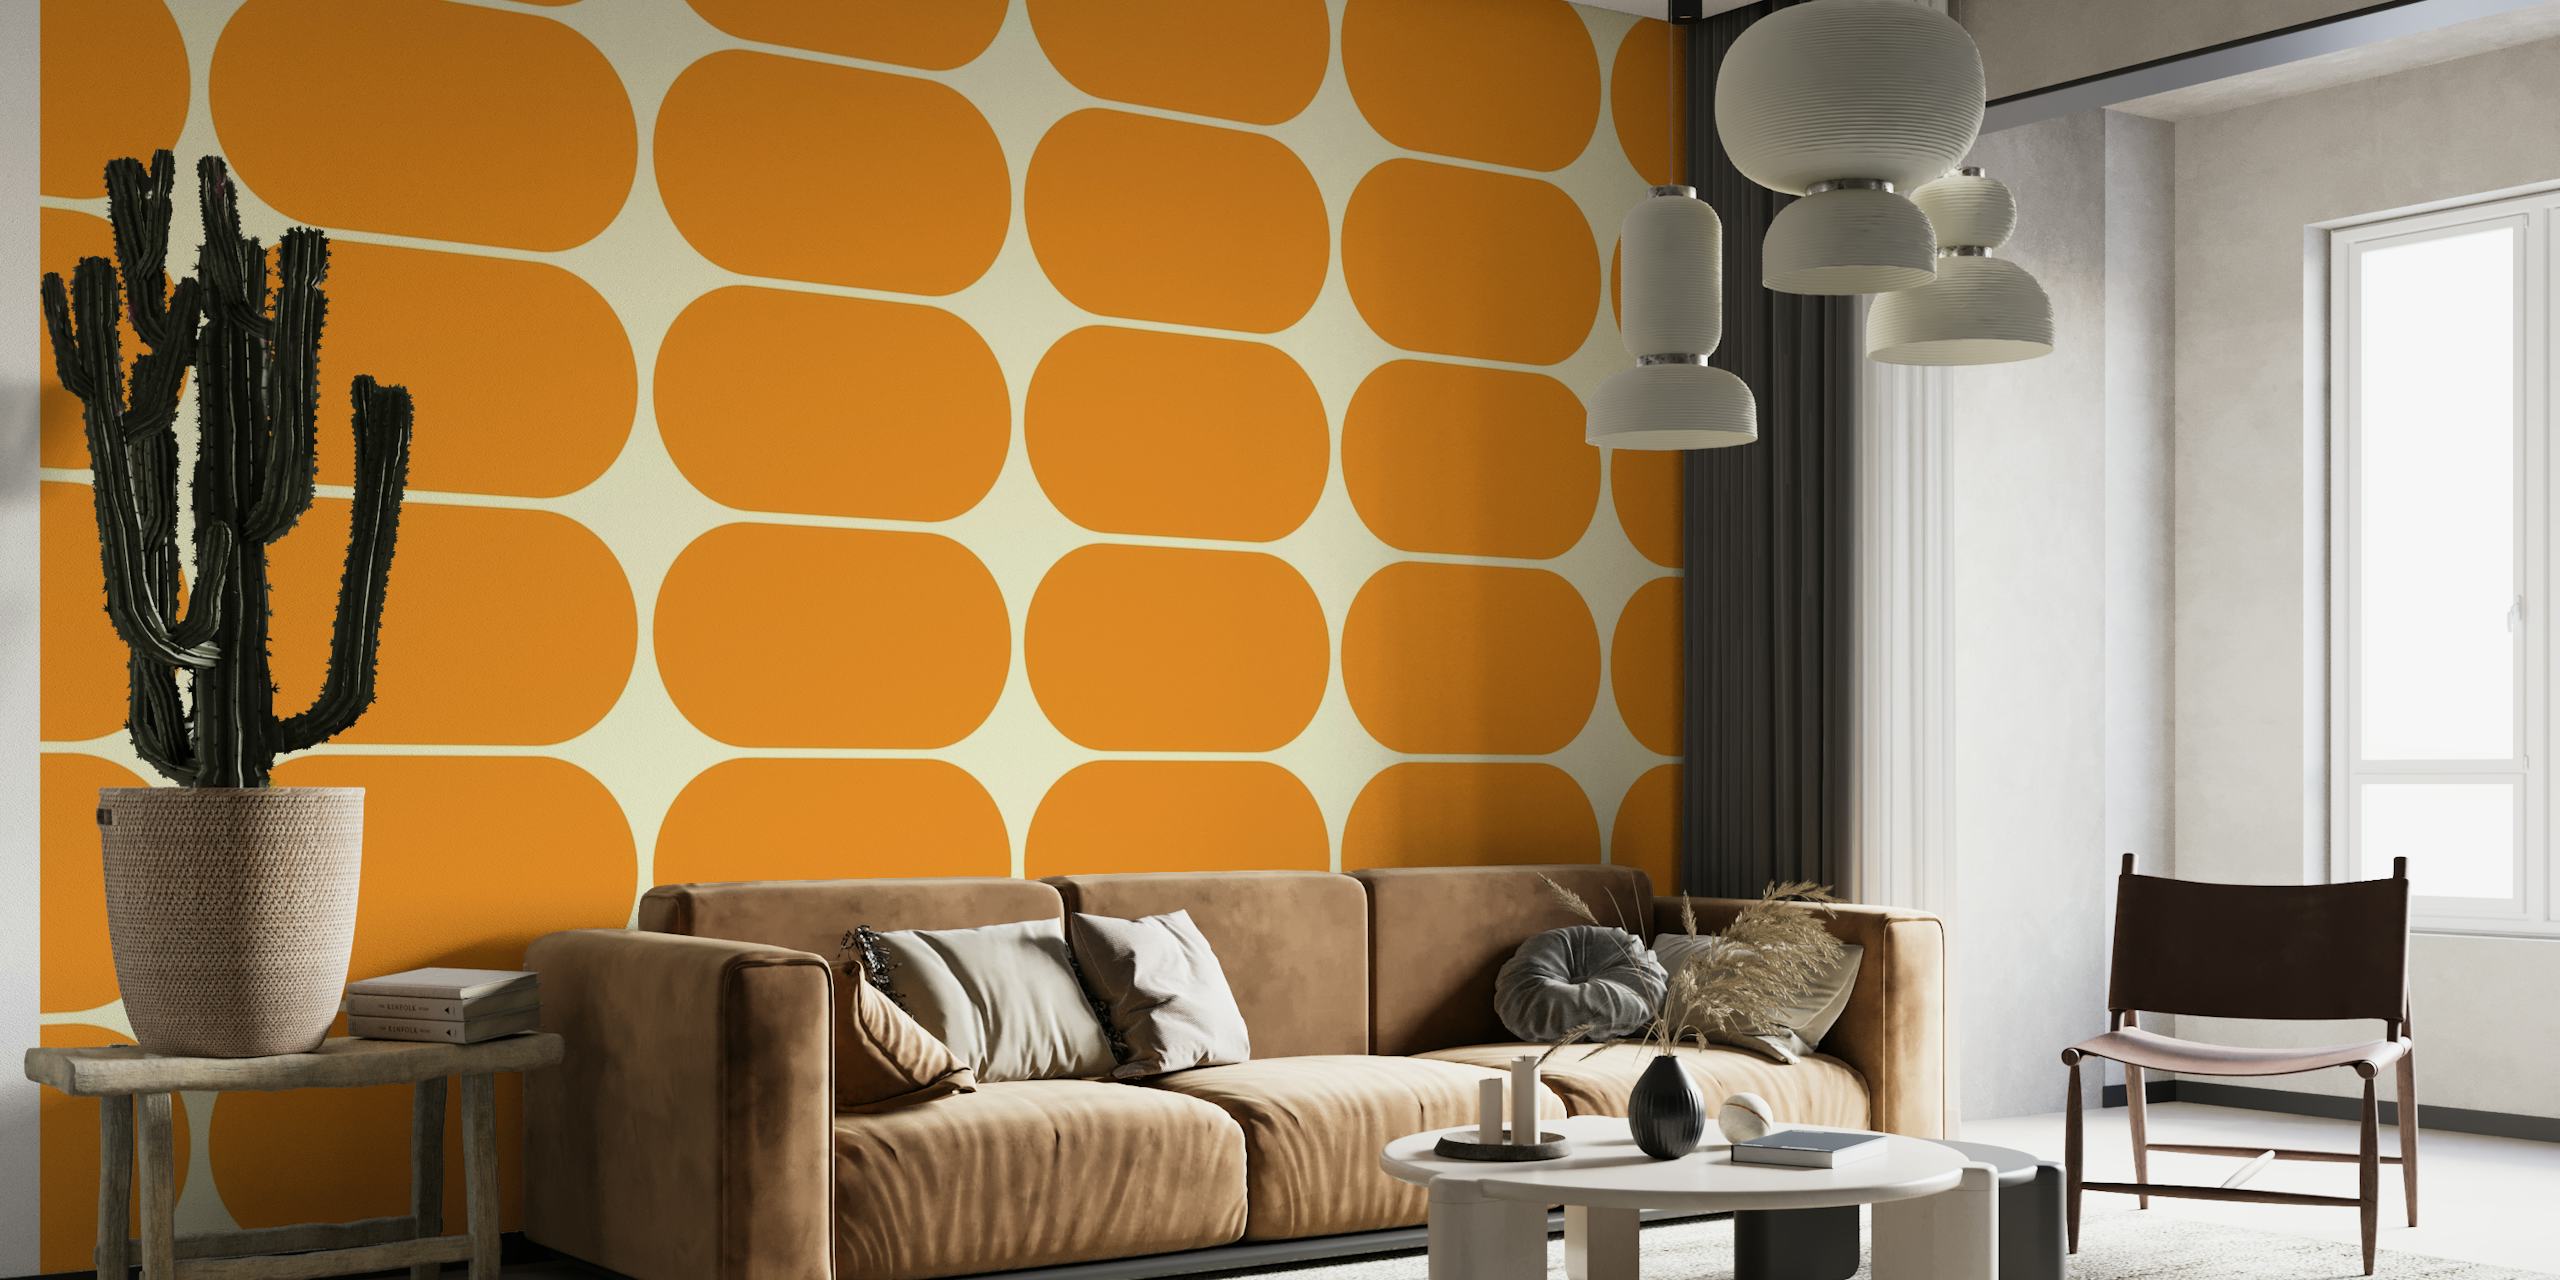 Formas abstratas de seixos laranja em um mural retrô inspirado em meados do século